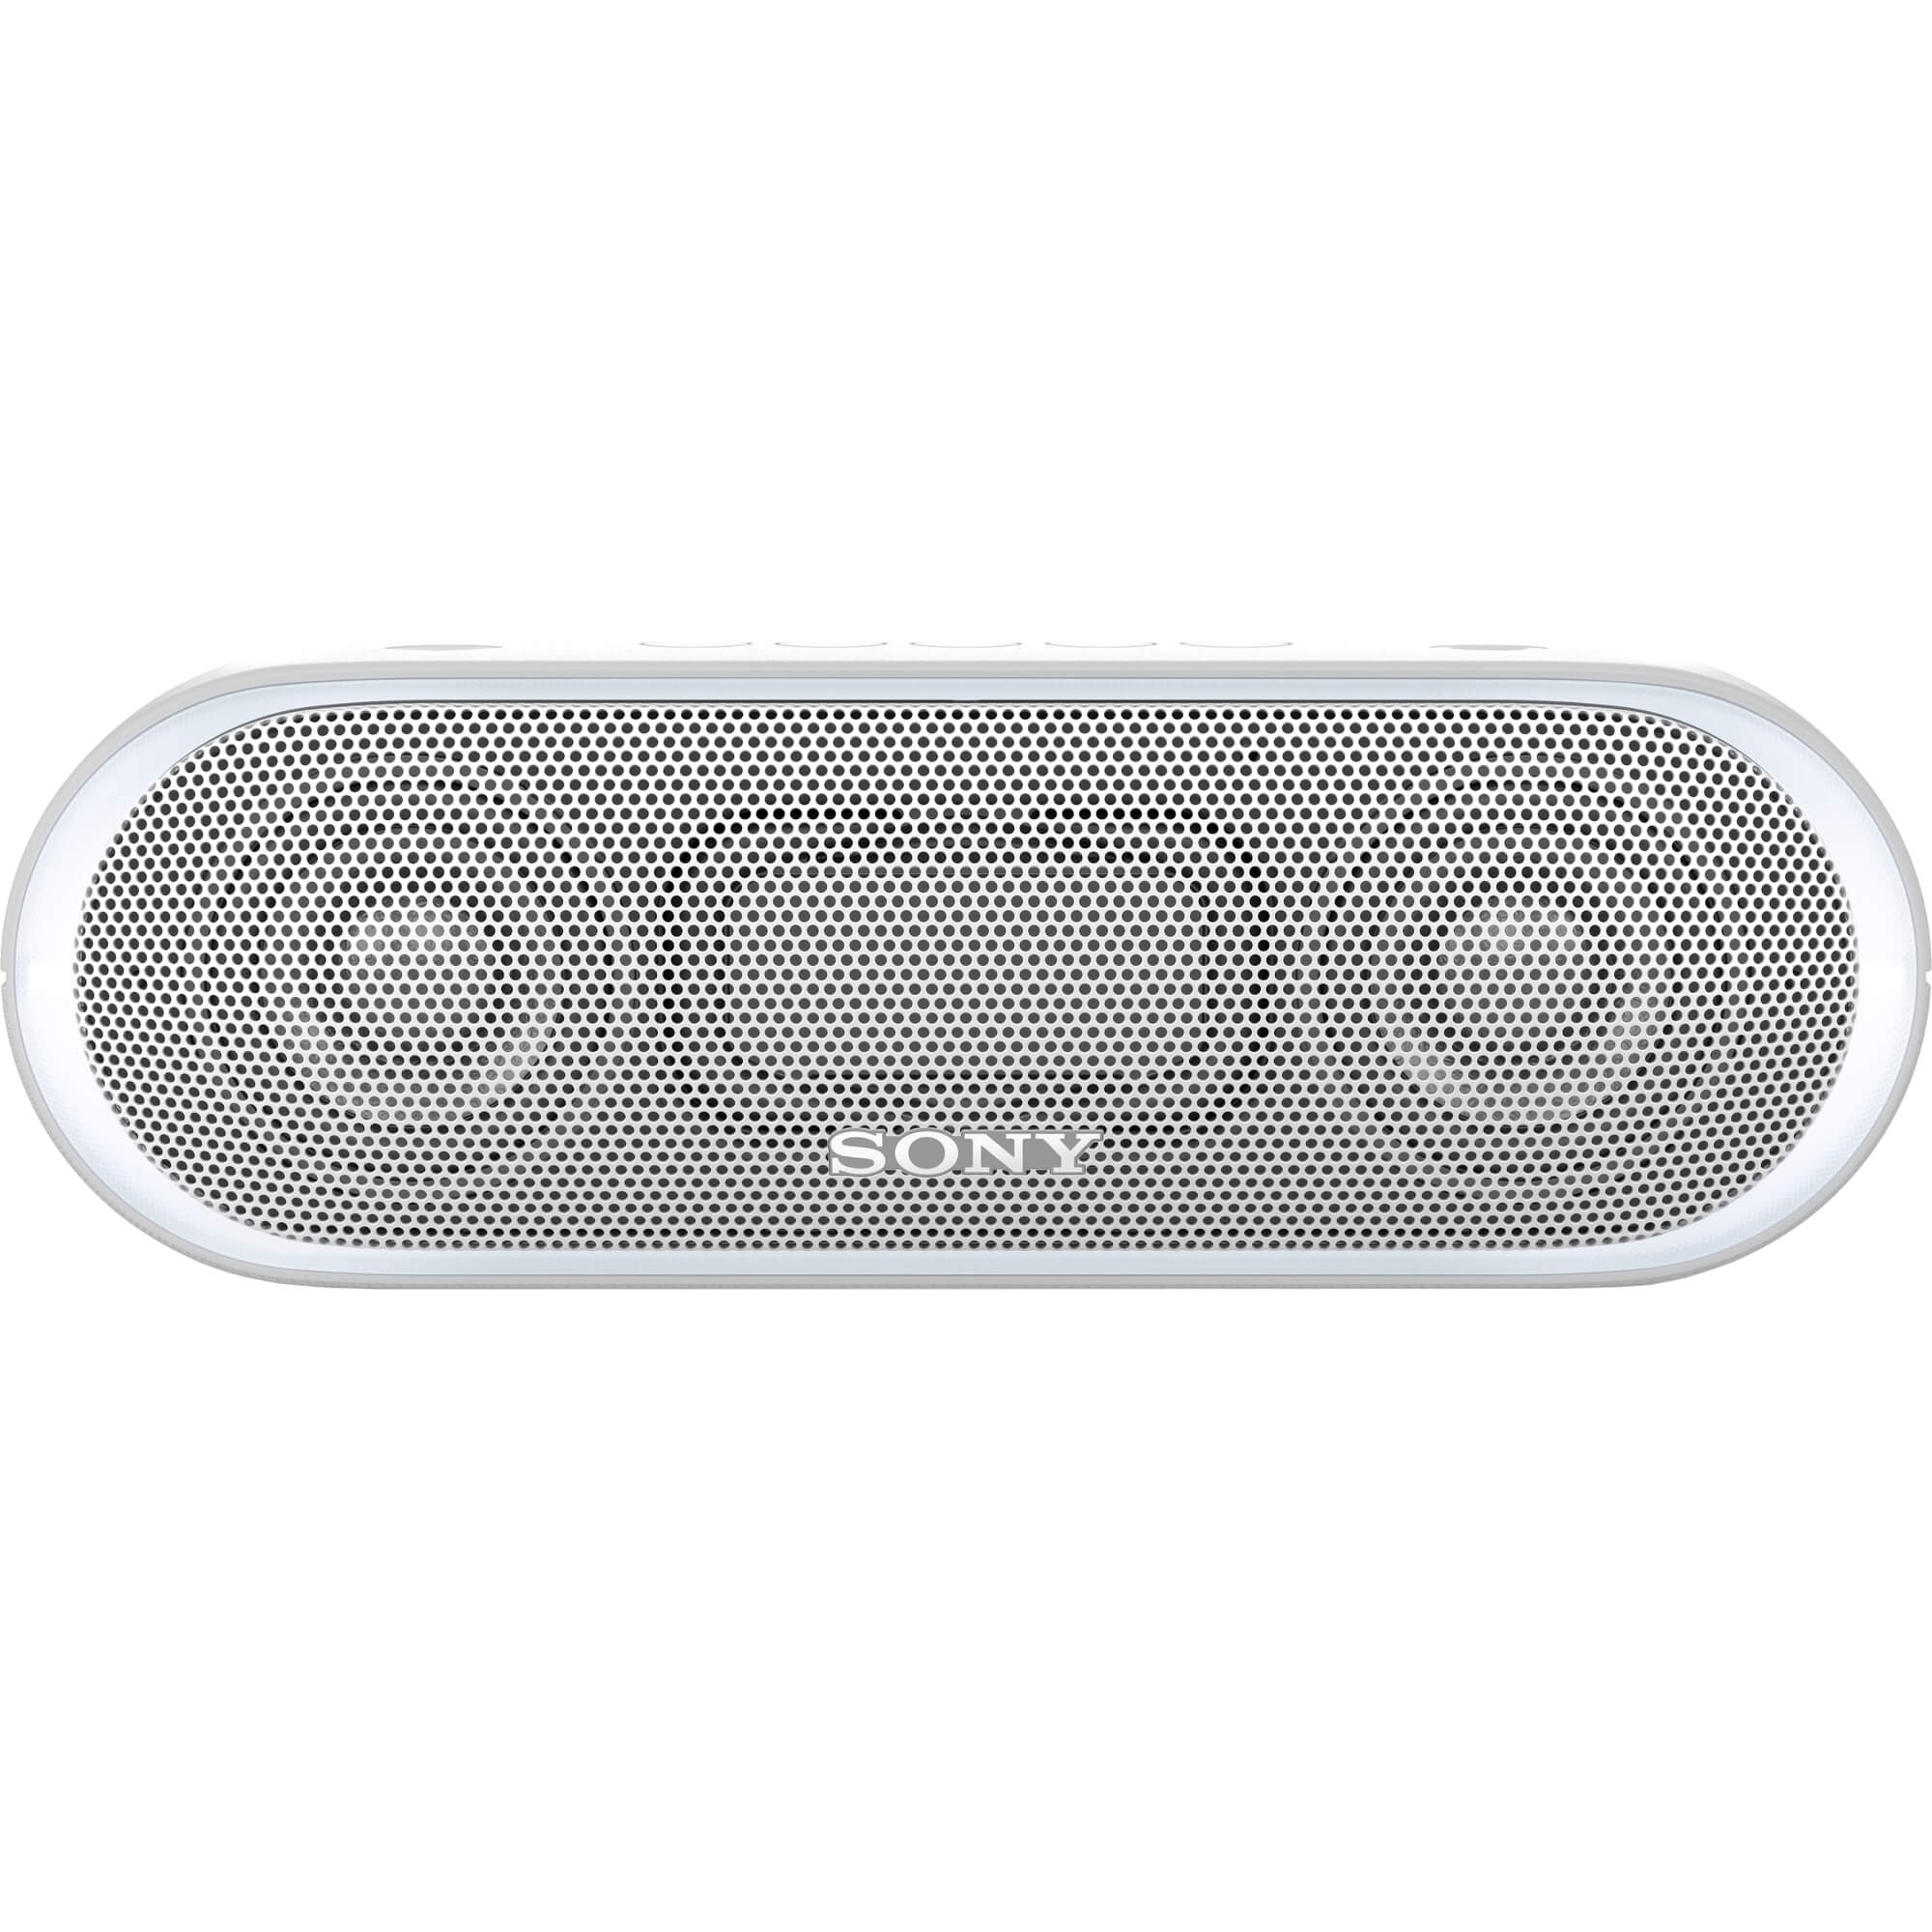  Boxa portabila Sony SRSXB20W.CE7, Bluetooth, Alb 